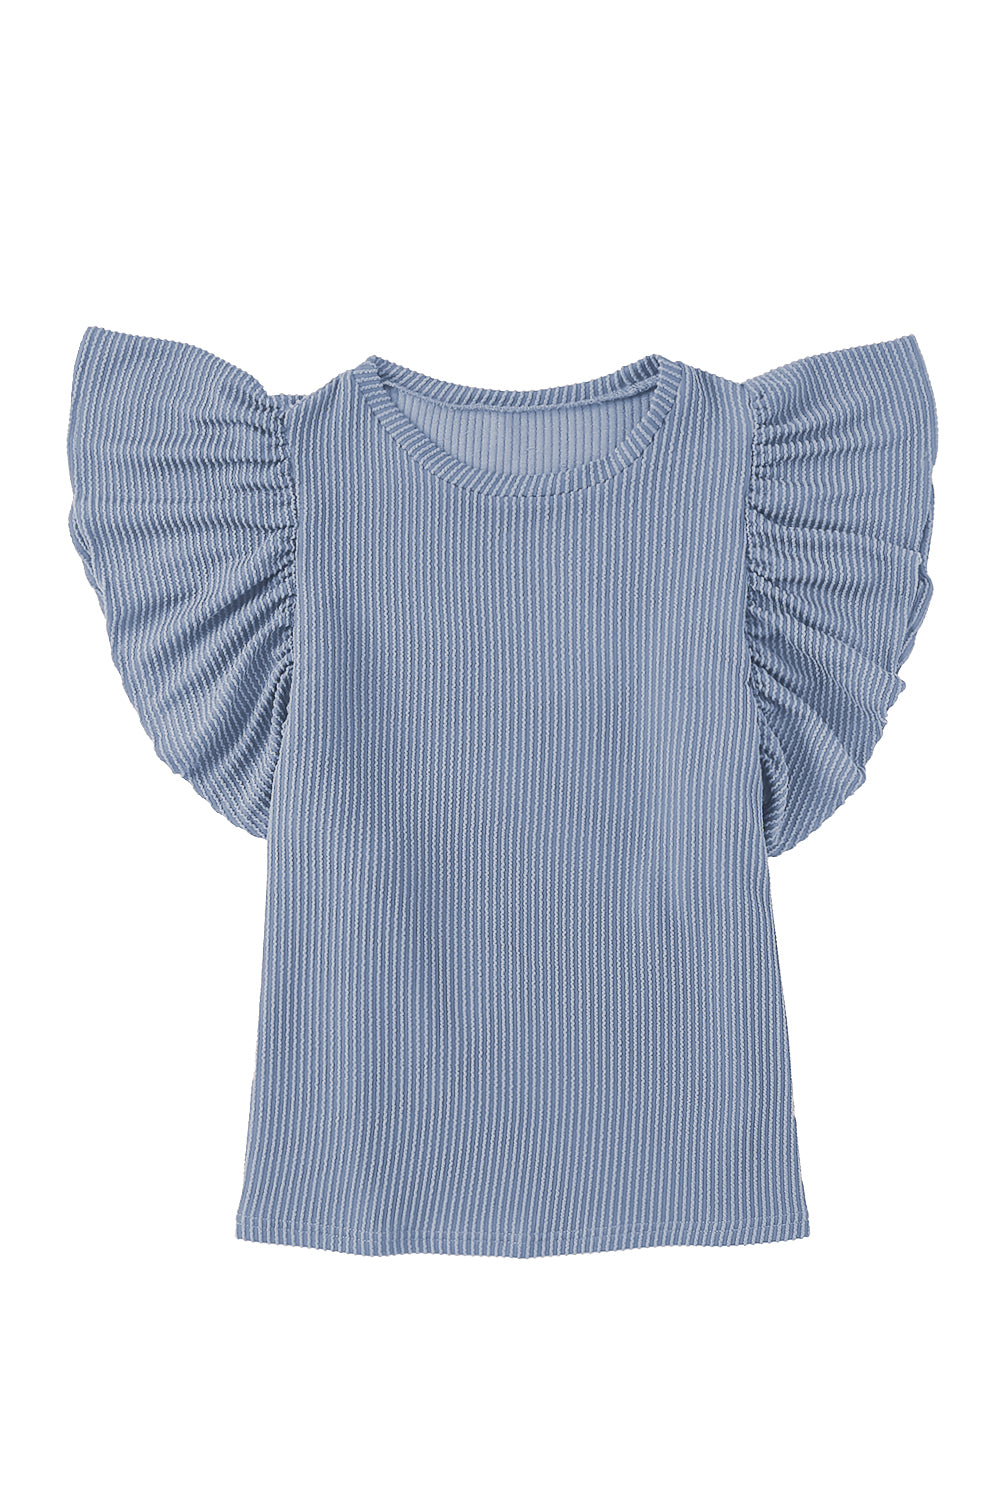 T-shirt à manches courtes à volants en tricot côtelé bleu ciel